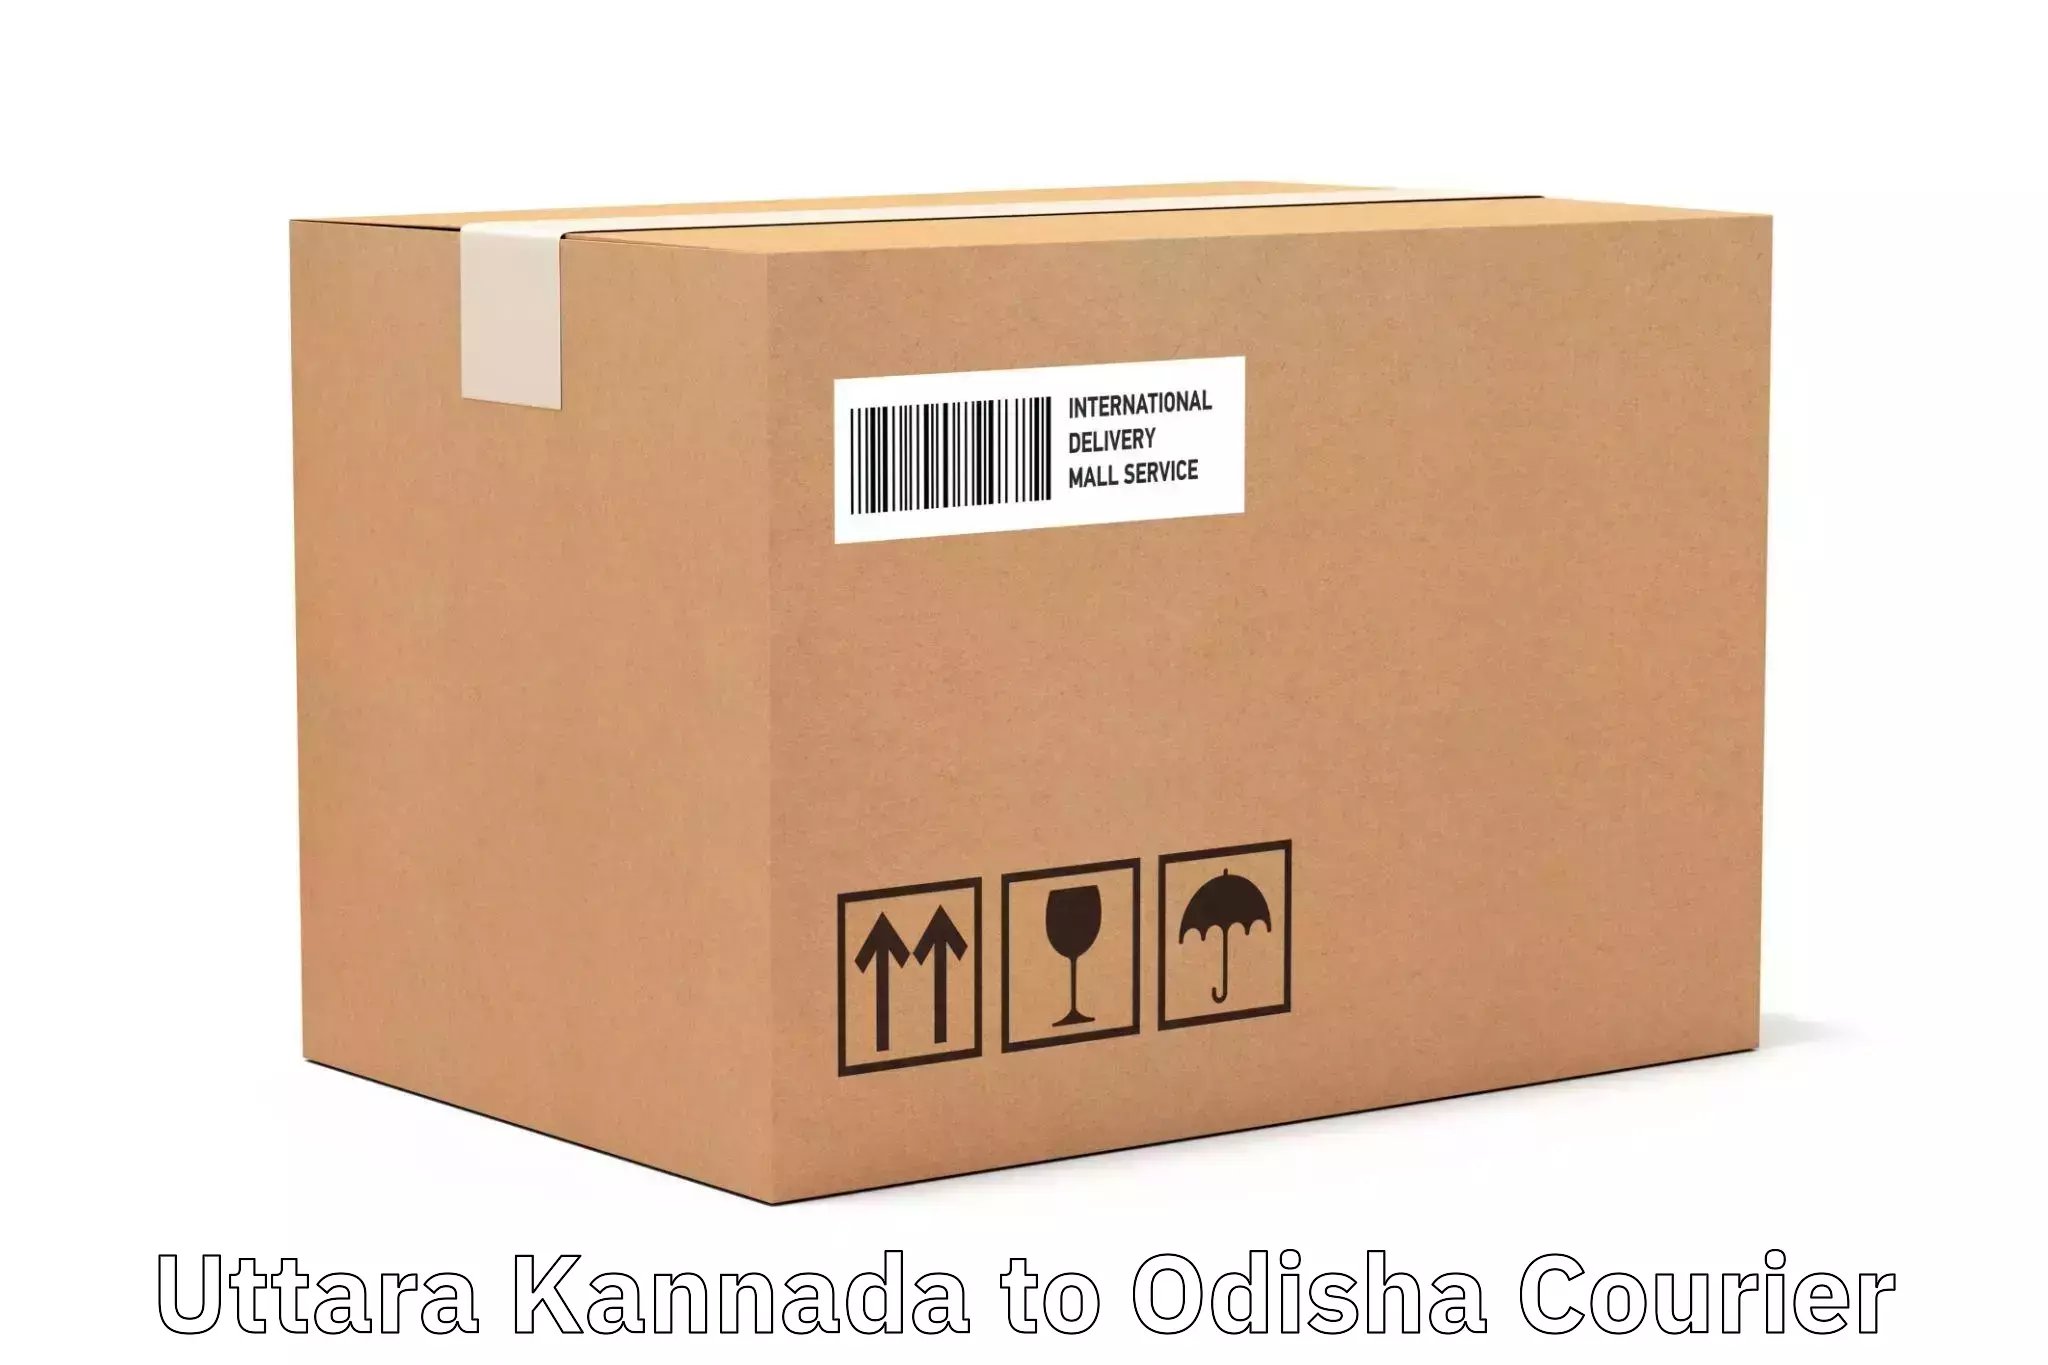 Shipping and handling Uttara Kannada to Odisha